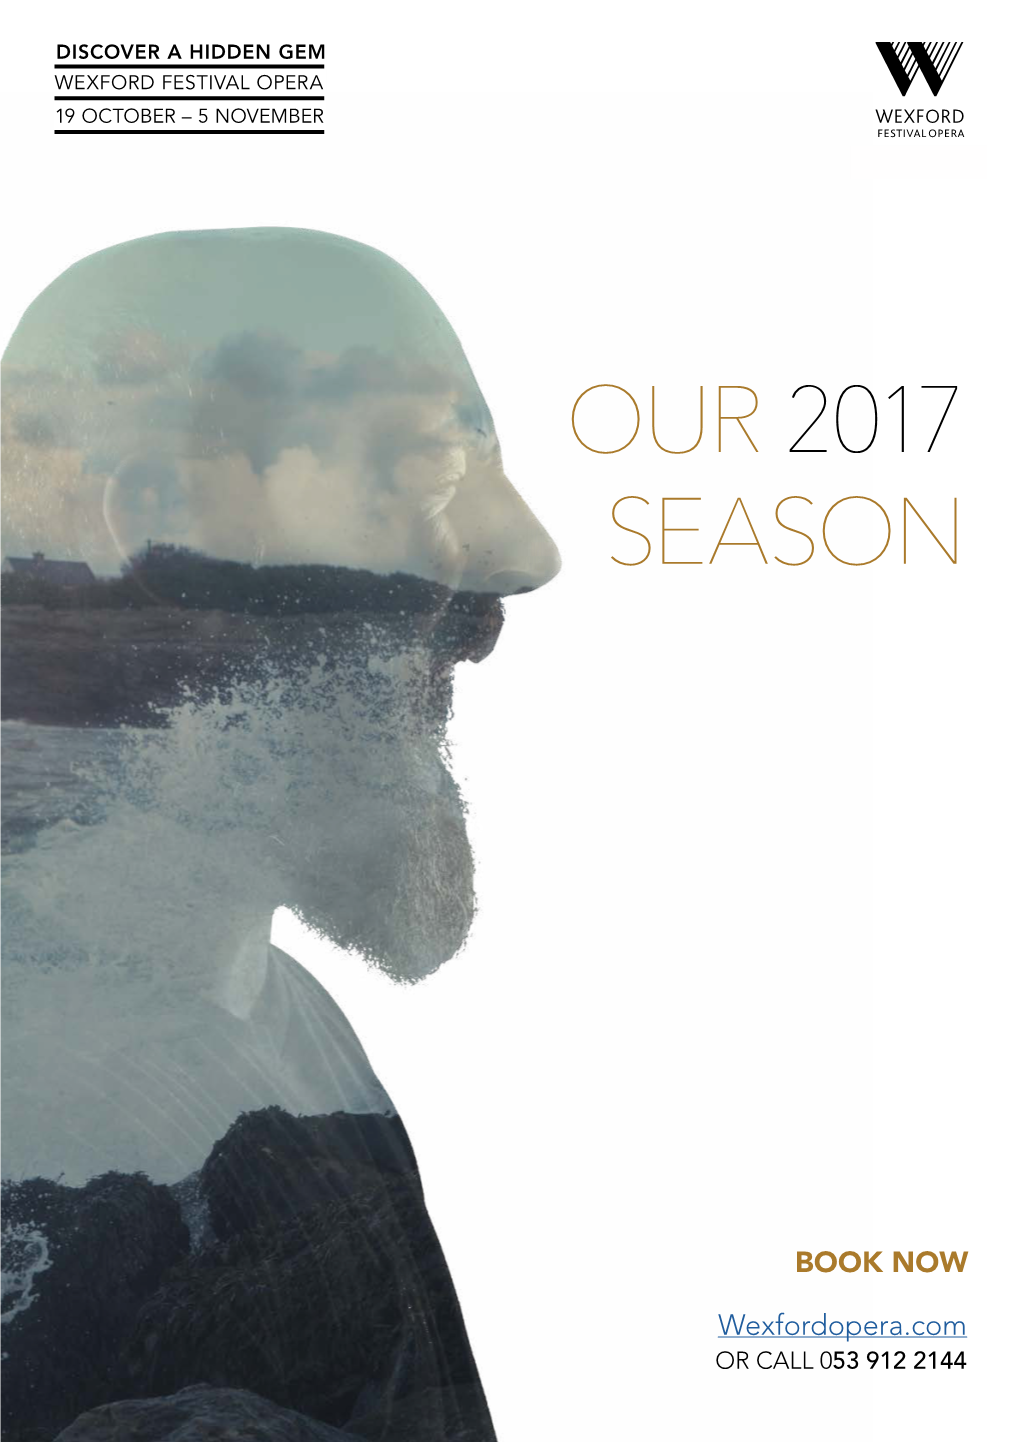 Our 2017 Season